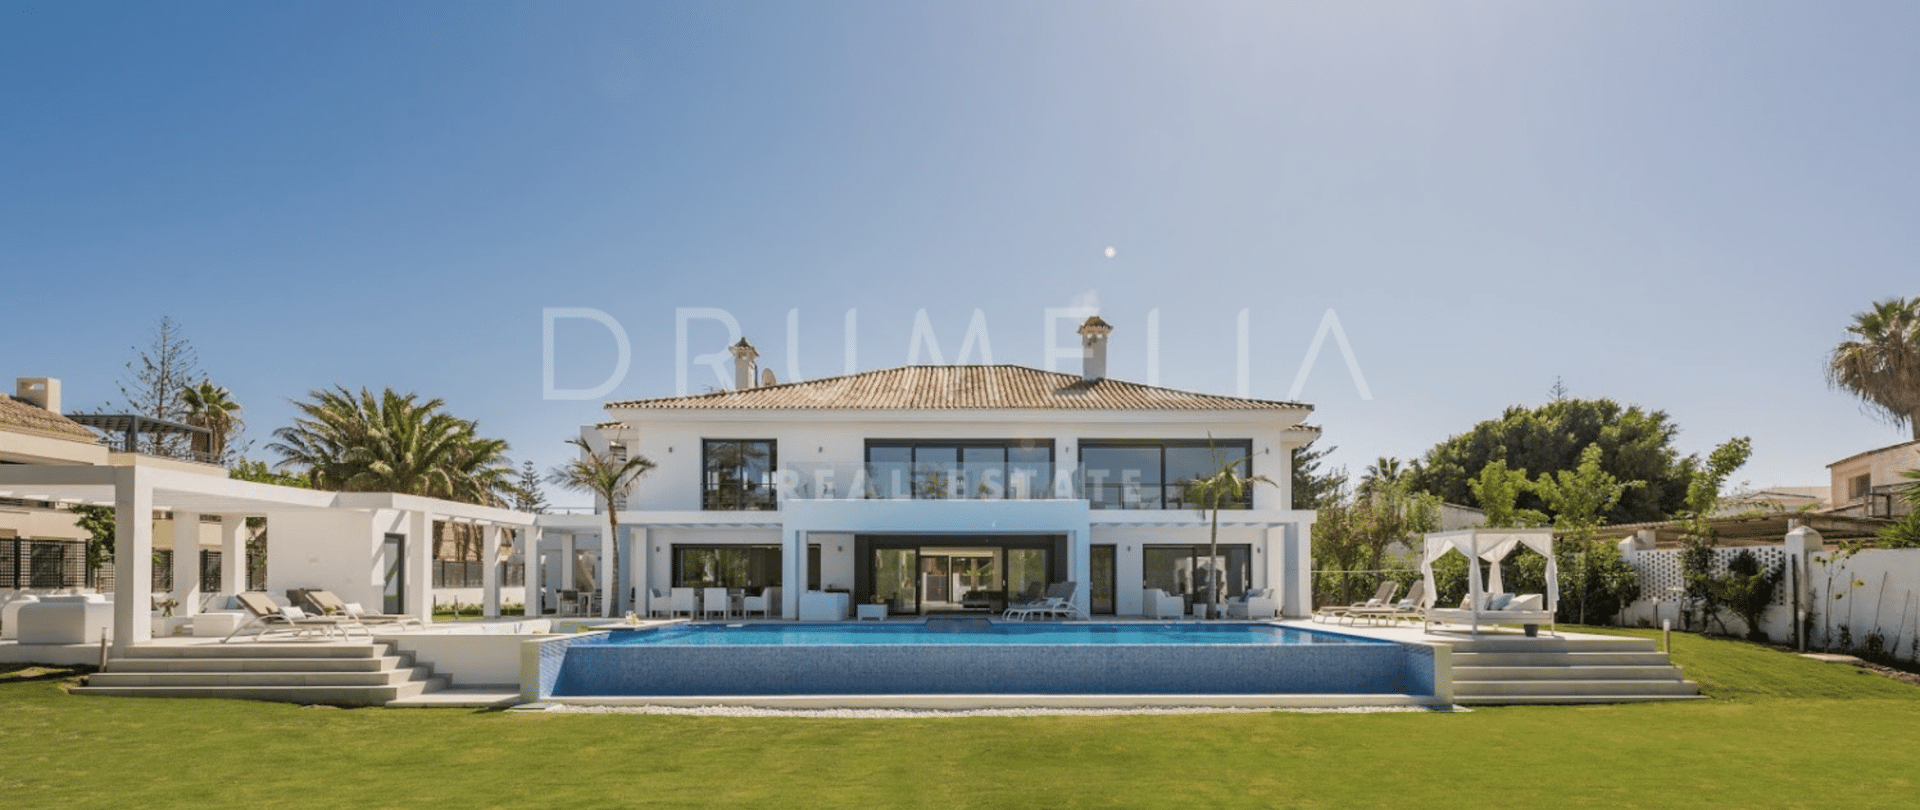 Impresionante Villa lujosa de nueva construccion a un paso de la playa en Casasola, Estepona